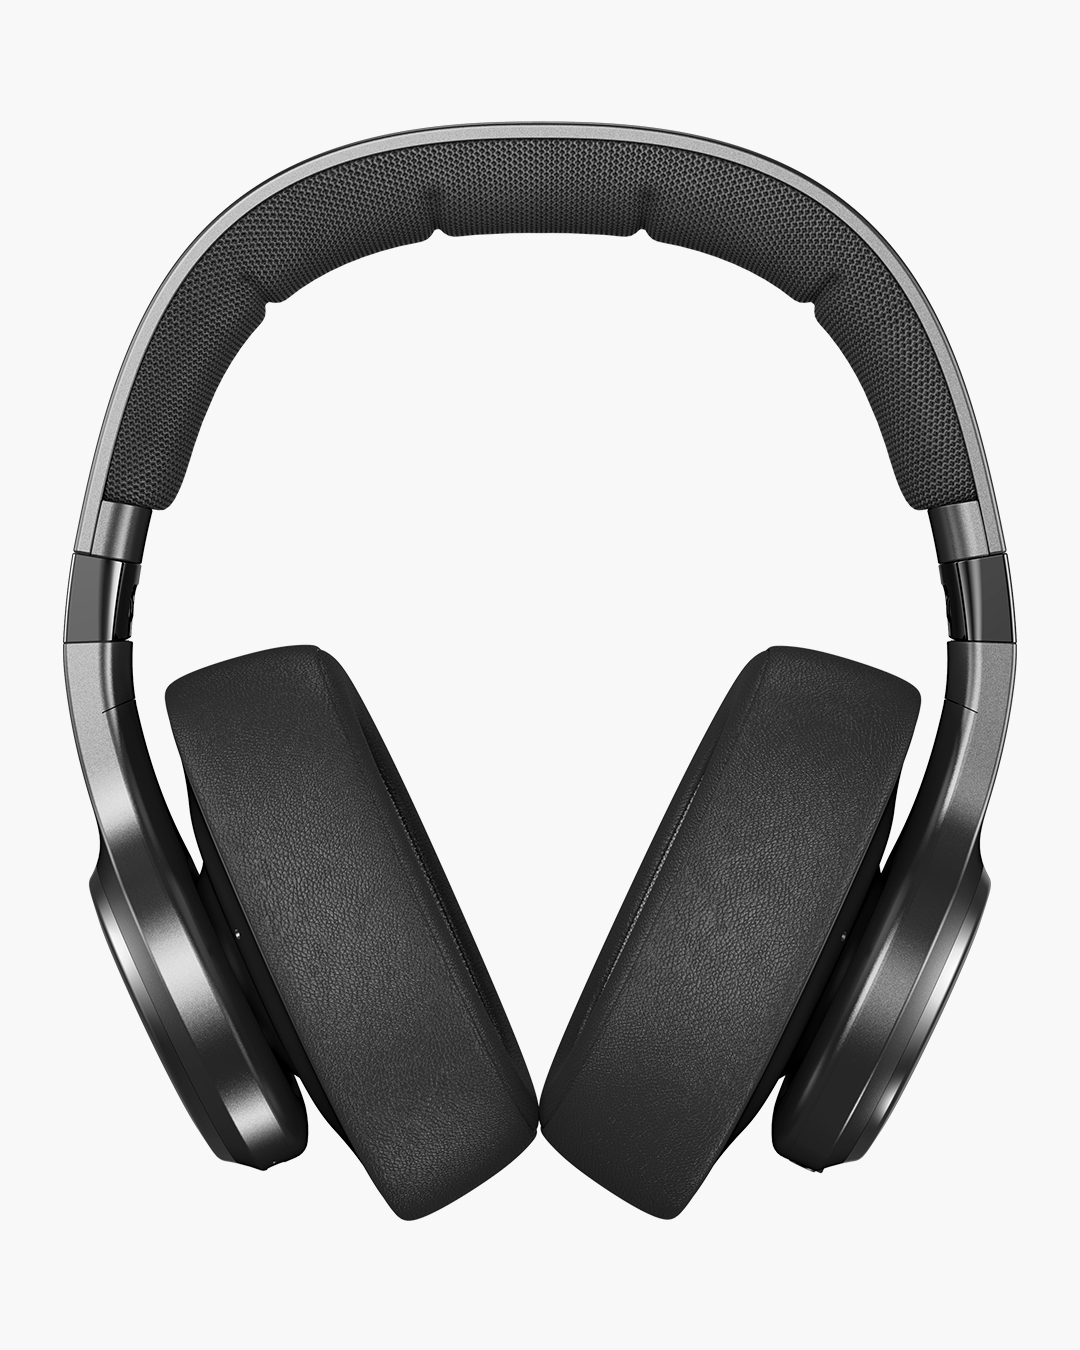 Digitale aktive Geräuschunterdrückung Silky Sand Speilzeit und Touch-Control-Steuerung 40 Std Fresh 'n Rebel Clam Elite Over-Ear-Kopfhörer mit Persönlicher Sound App 